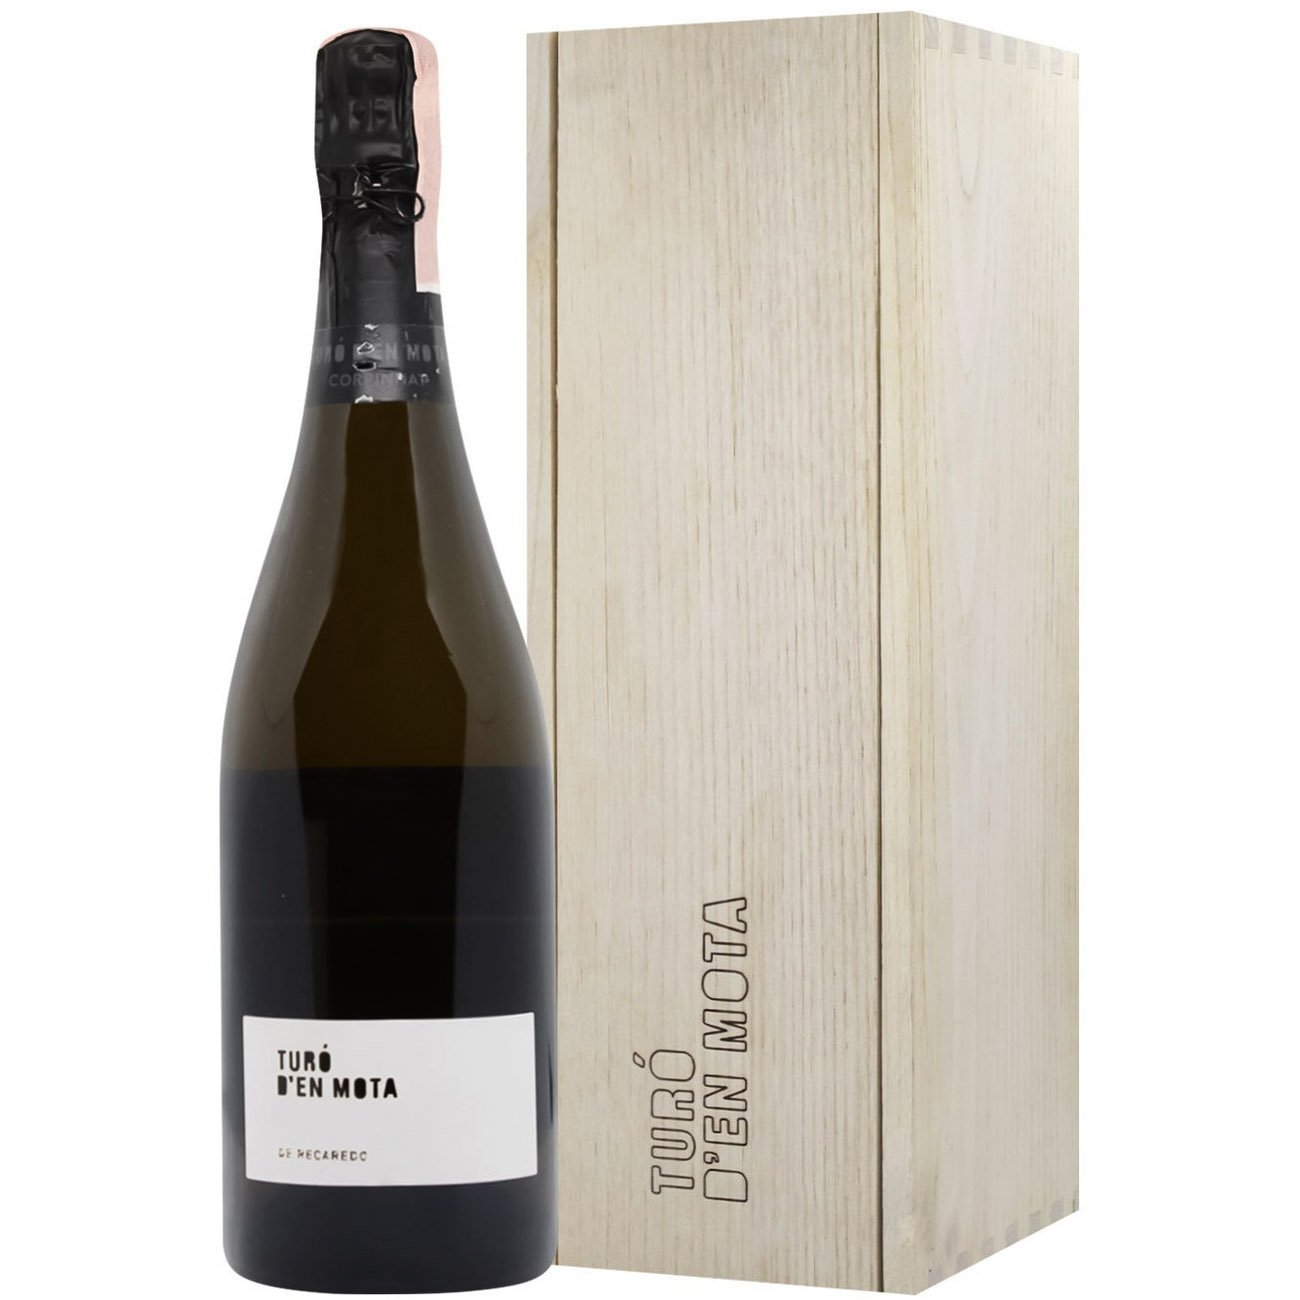 Вино игристое Recaredo Turo d'En Mota 2008, белое, брют натюр, в подарочной упаковке, 0,75 л - фото 1